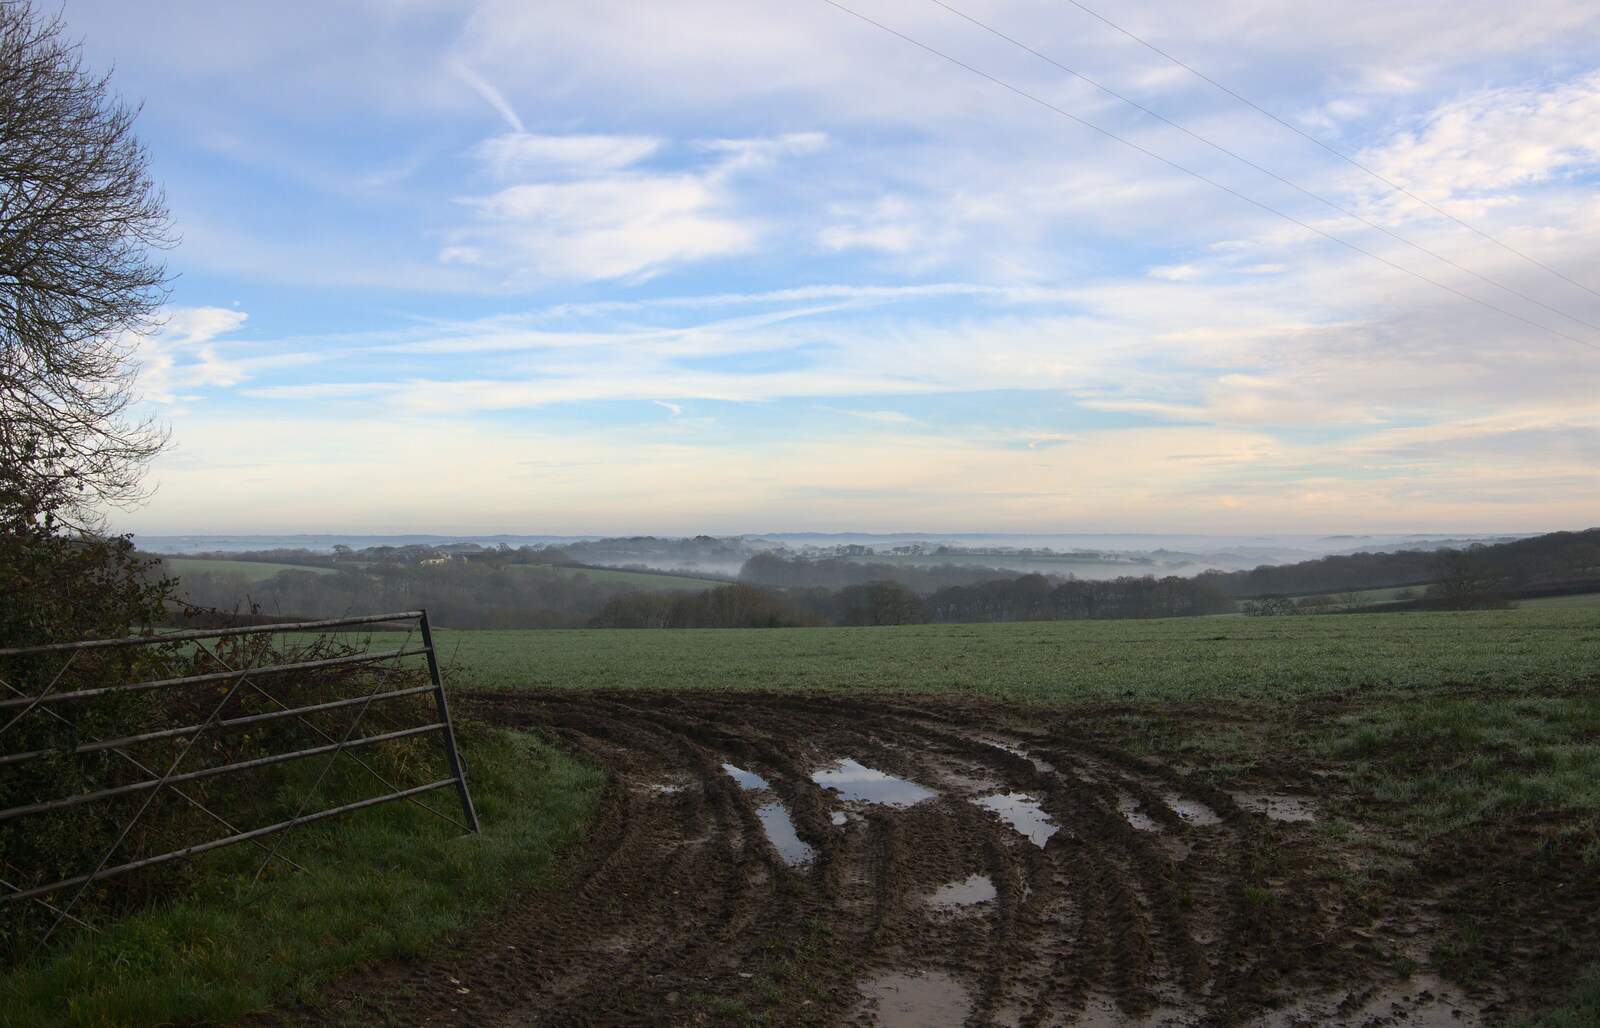 A muddy field in Spreyton from Boxing Day in Devon, Spreyton, Devon - 26th December 2018